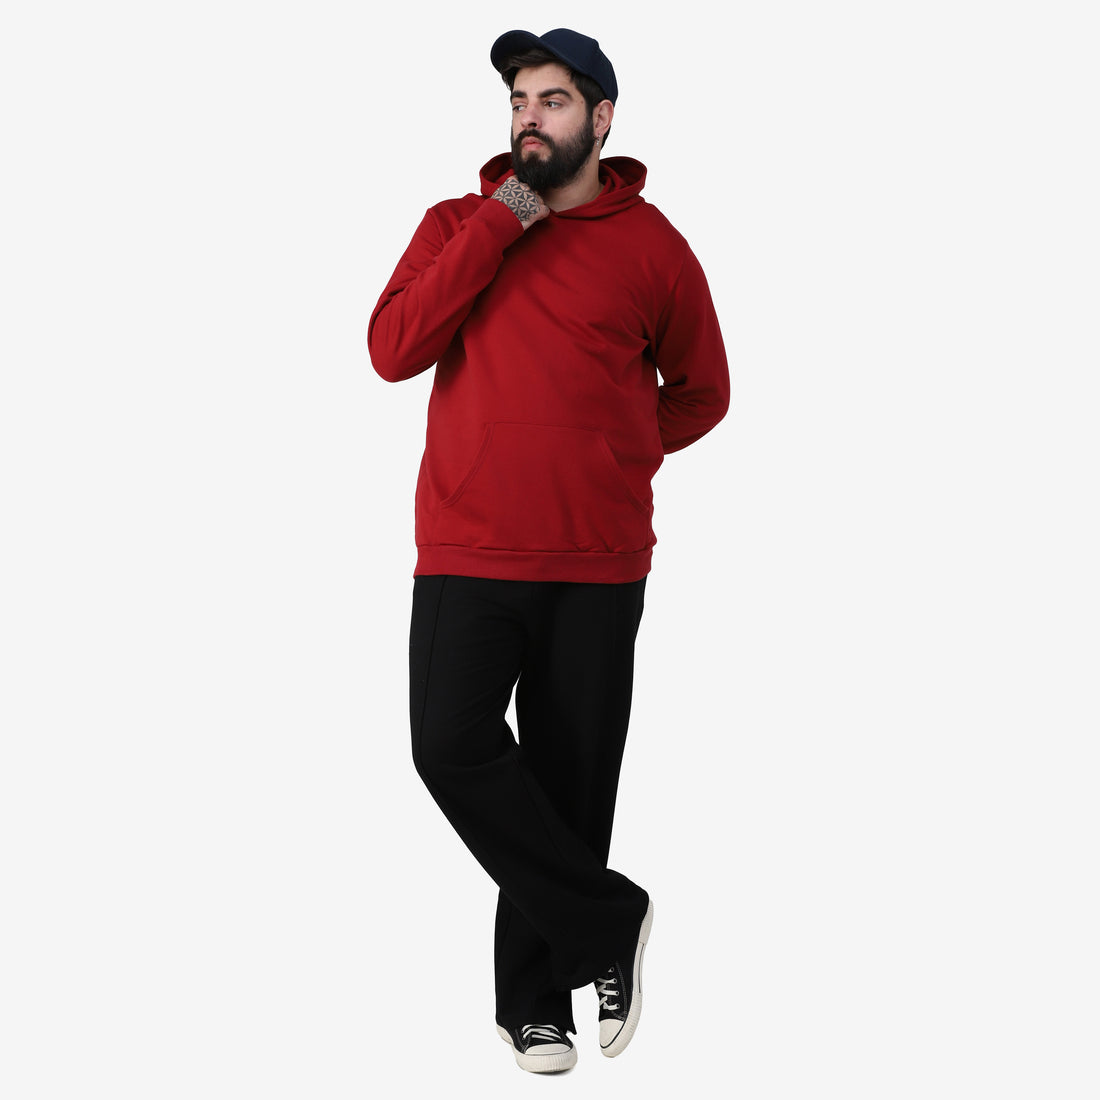 Blusão Tech Impermeável Moletom Flanelado Capuz Plus Masculino - Vermelho Escarlate